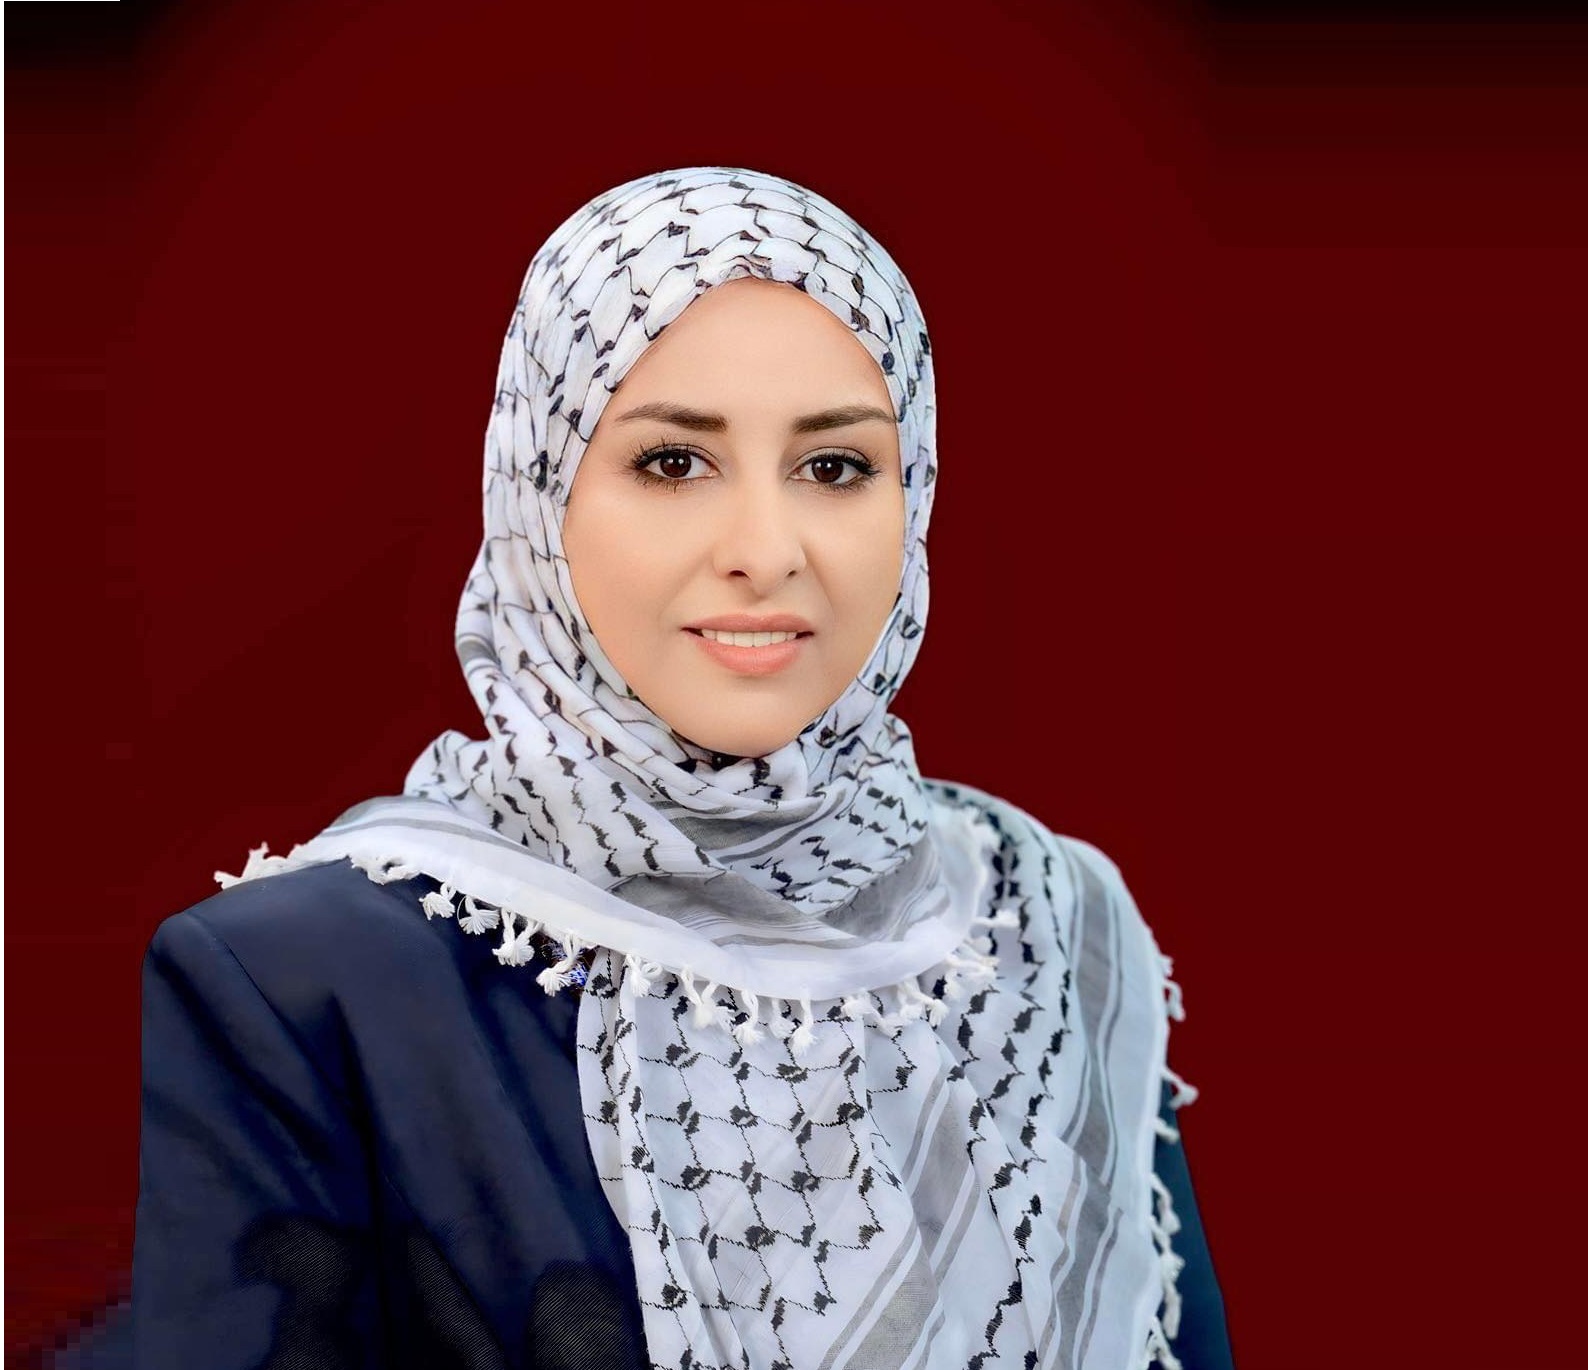 المرأة الفلسطينيّة ما بين ثقل المسؤوليّة وسموّ الرّسالة، بقلم : رولا خالد غانم